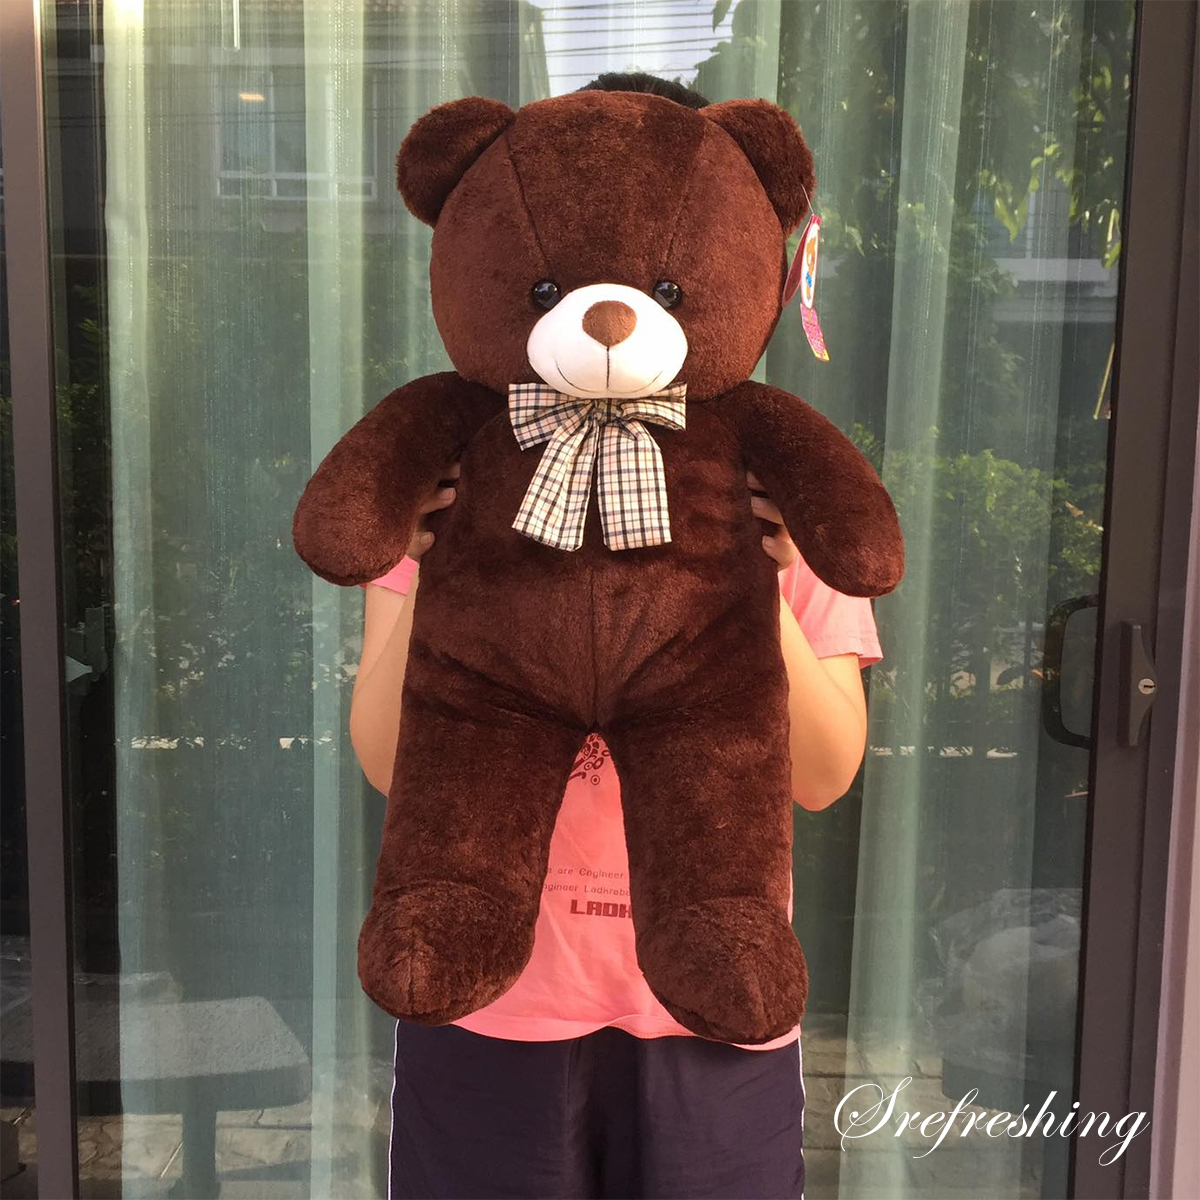 ตุ๊กตาหมี หมีดีนี่ ของขวัญในวันพิเศษๆ ขนาด 60 ซม. ผลิตในประเทศไทย